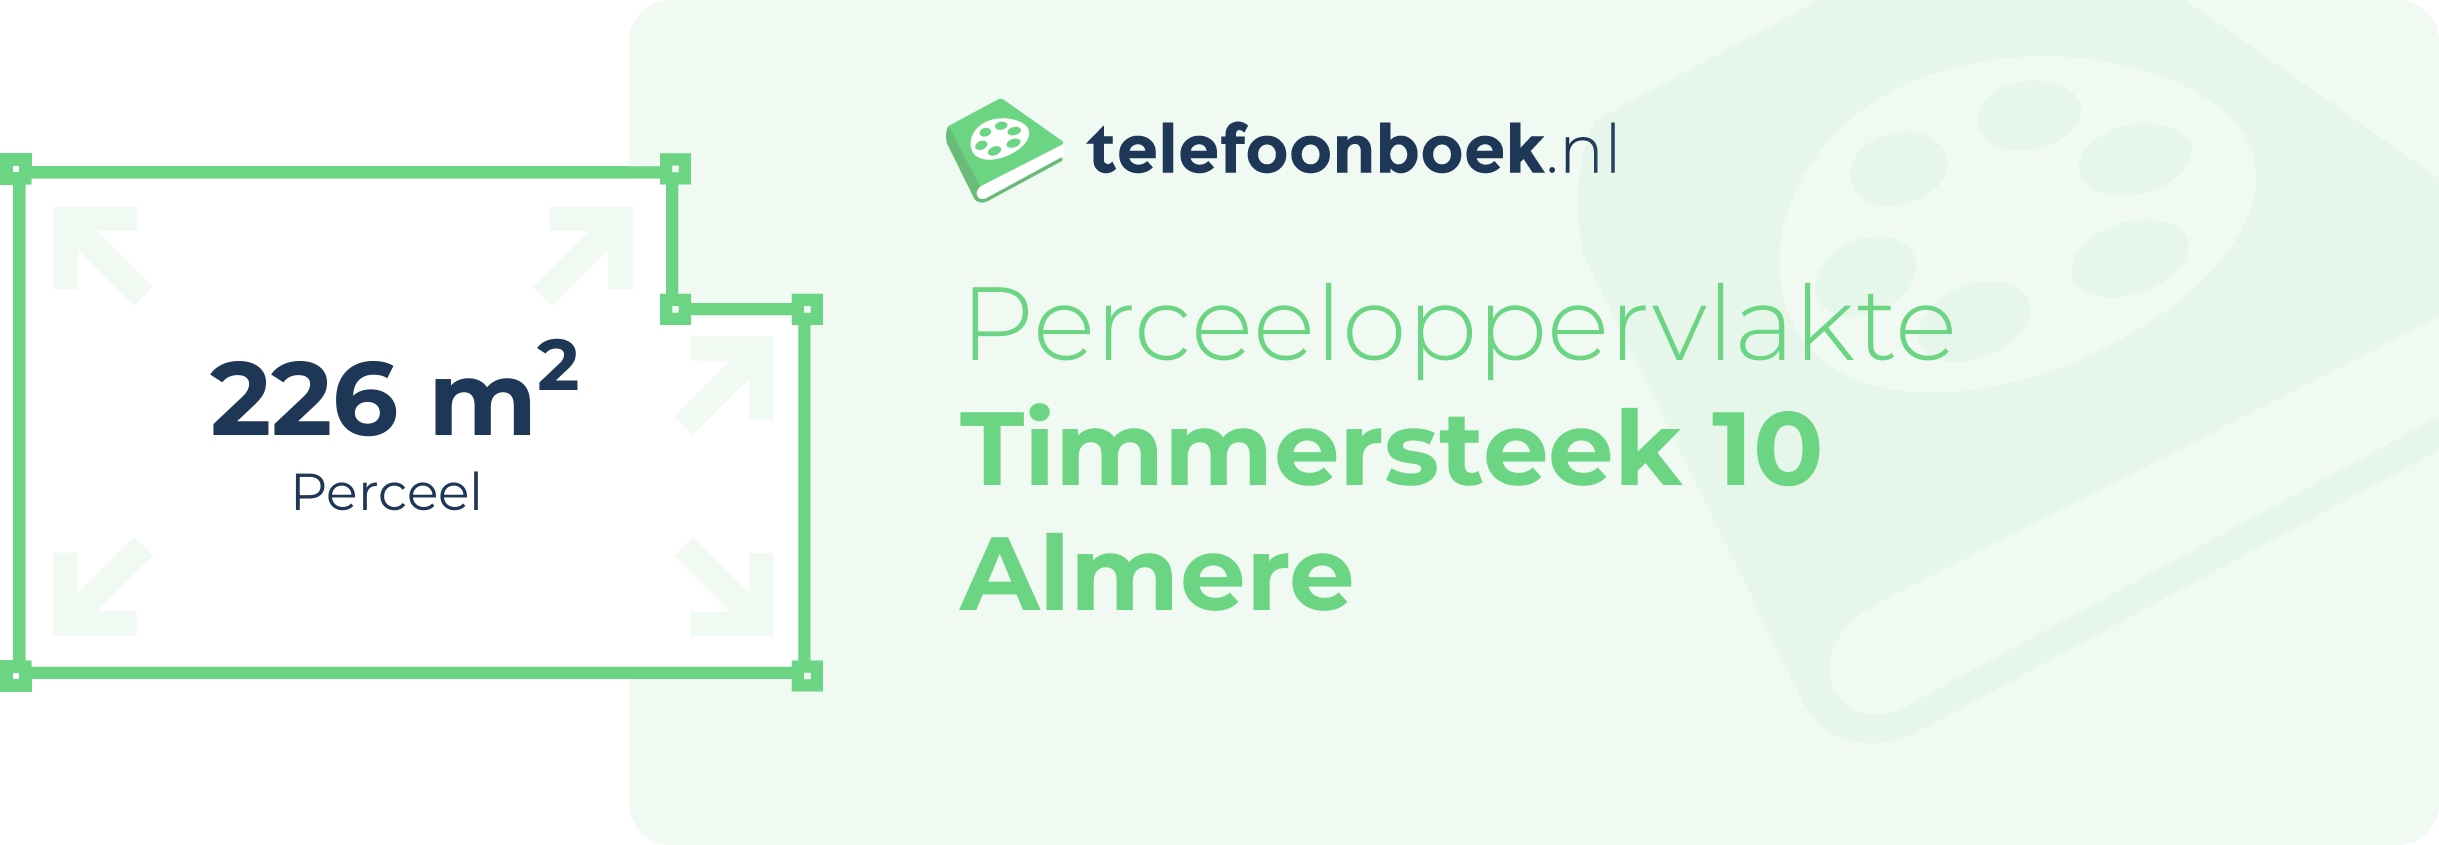 Perceeloppervlakte Timmersteek 10 Almere